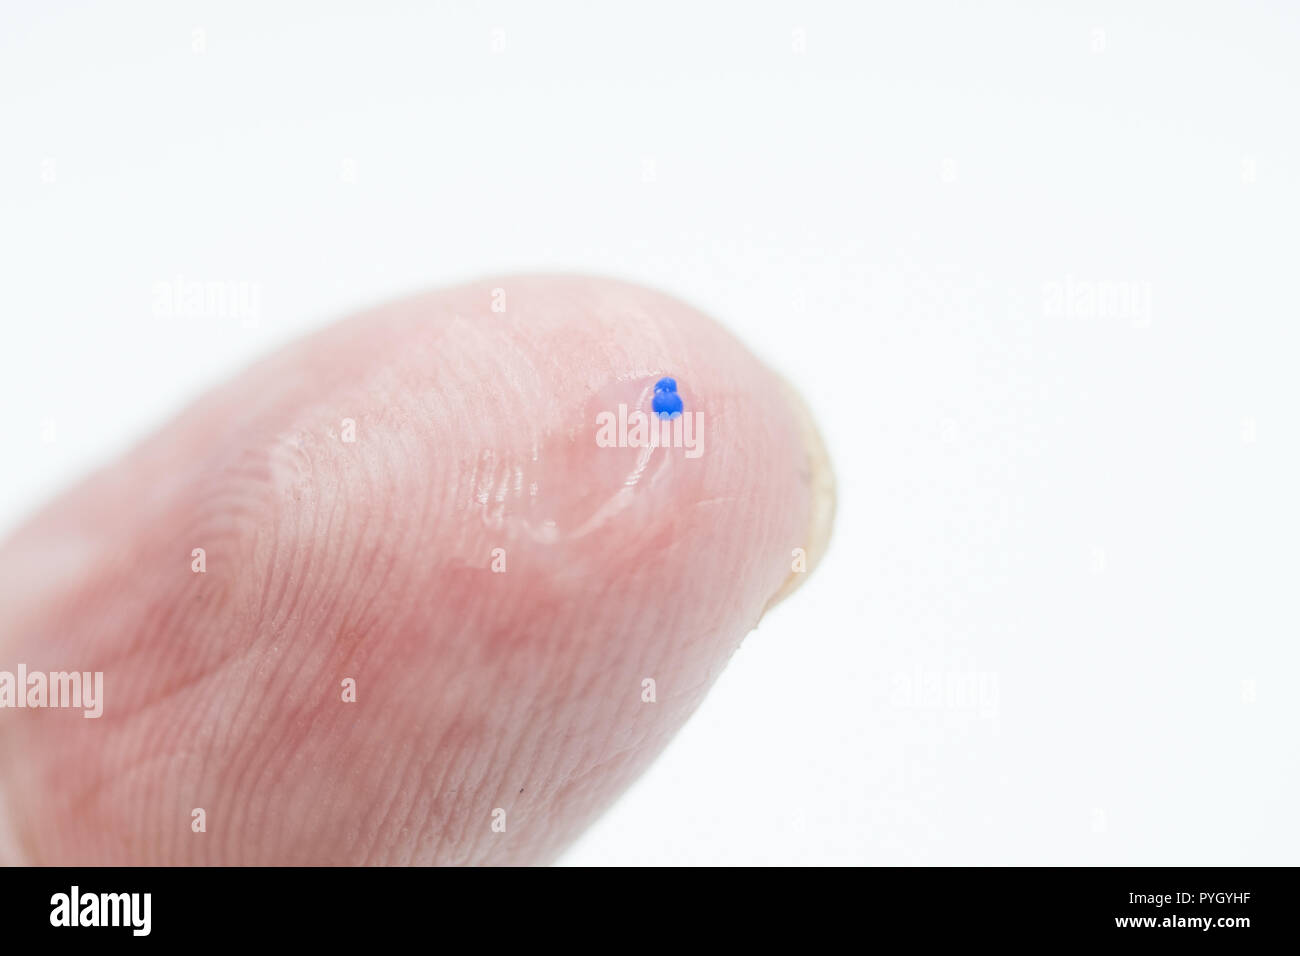 Concept de la pollution,image gel gommage du corps en se concentrant sur un seul micro Bead Banque D'Images